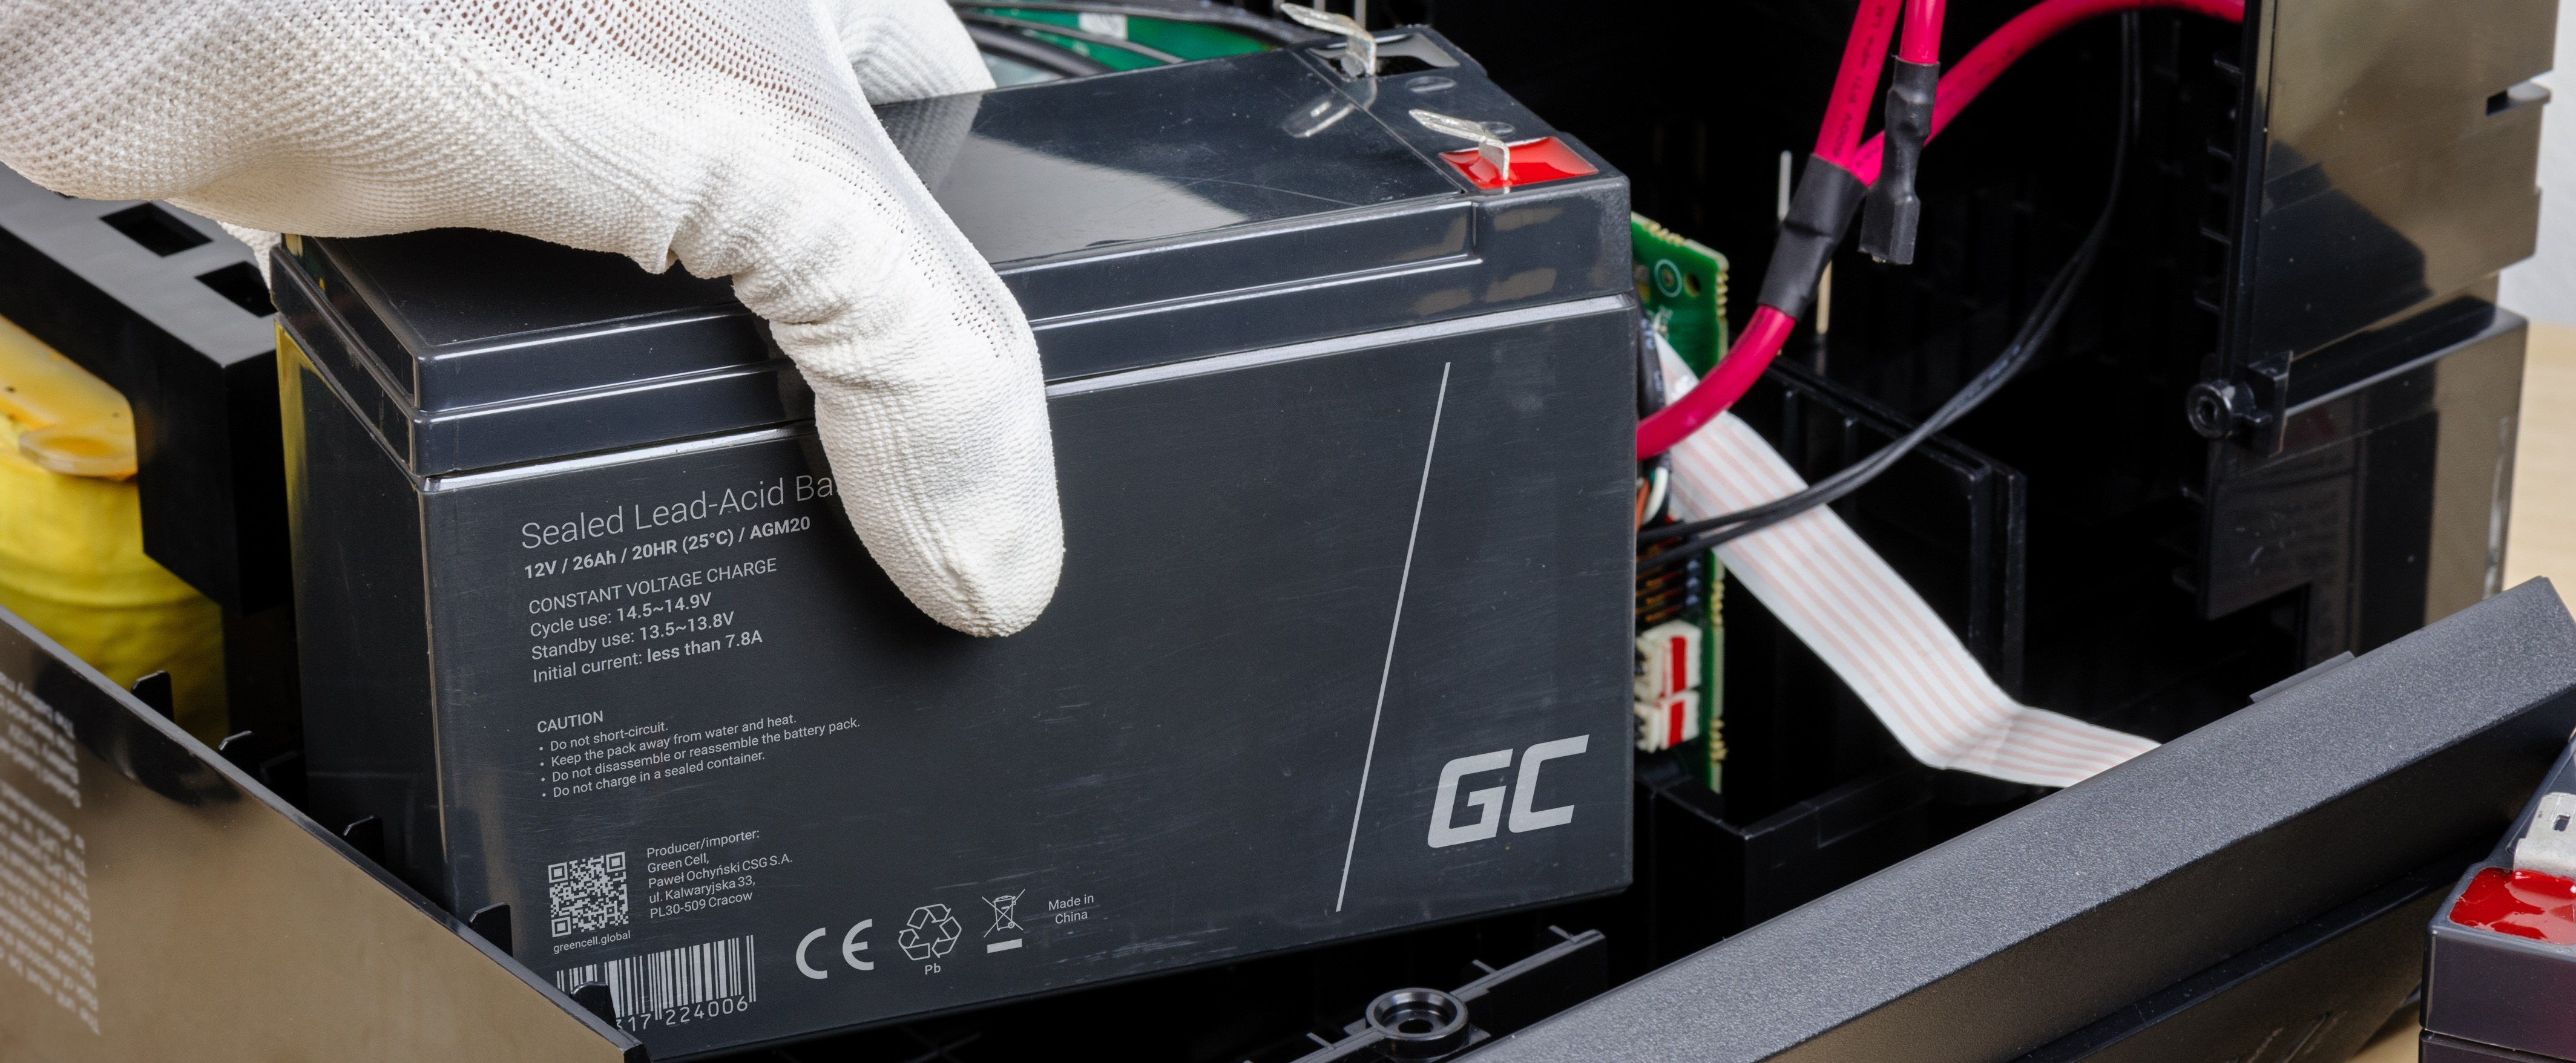 Expertenmeinung: Wofür werden AGM-Batterien verwendet?